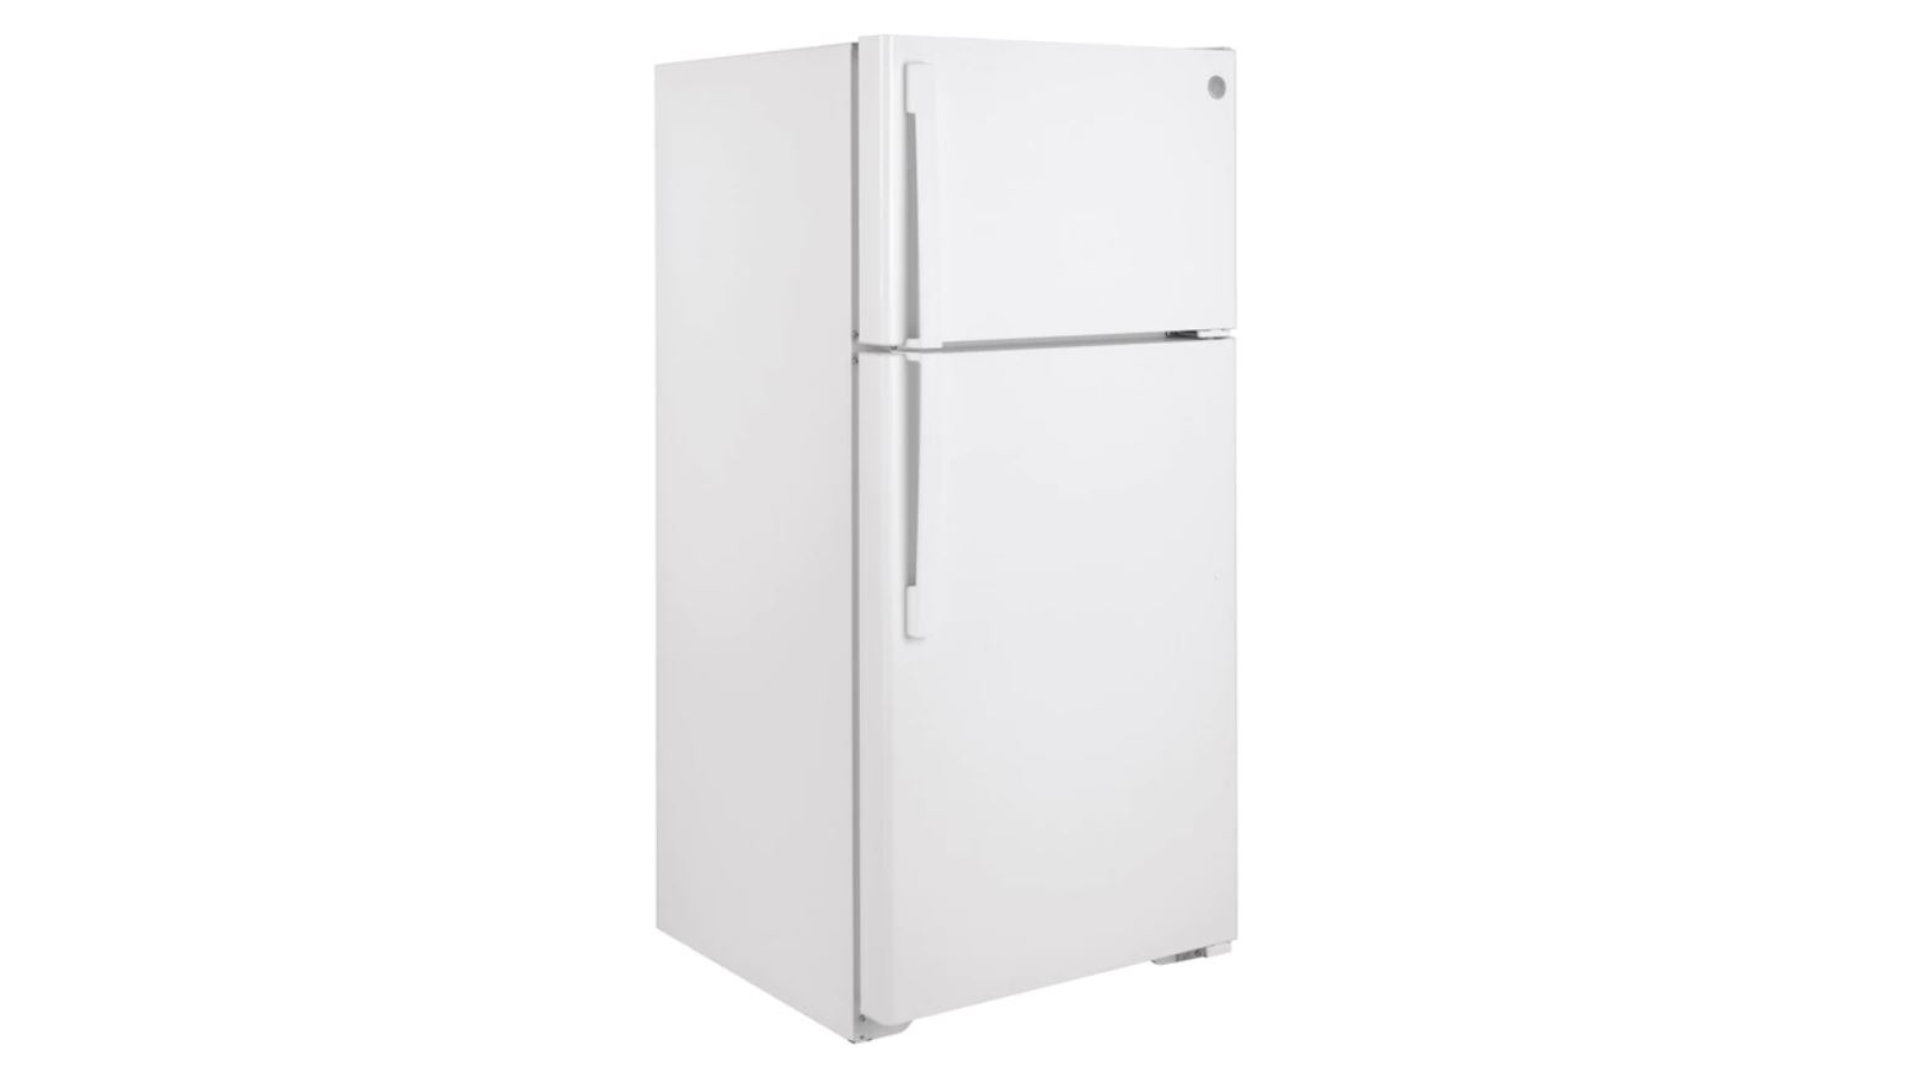 GE Refrigerator Not Defrosting